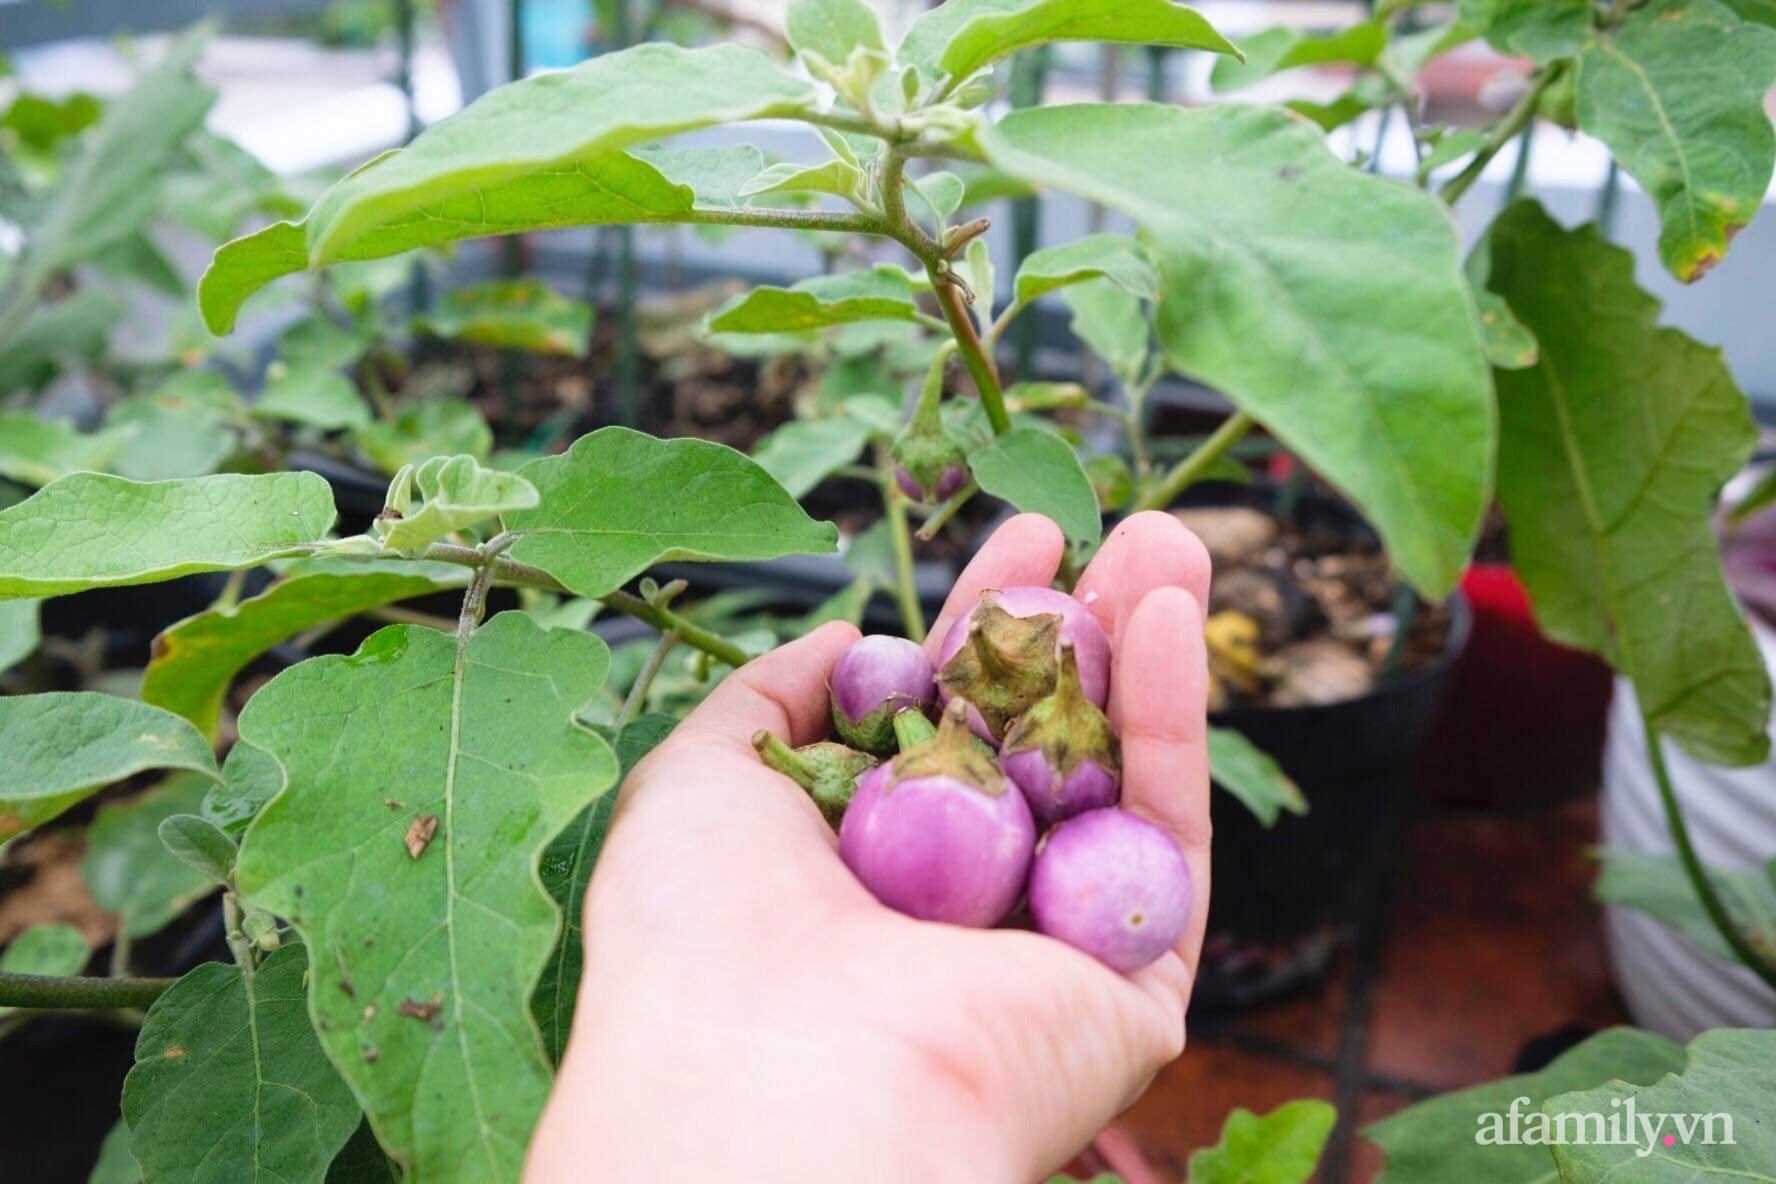 Bí quyết dễ học để tạo góc vườn xanh mát mắt đủ loại rau quả sạch của mẹ 3 con ở Sài Gòn - Ảnh 8.